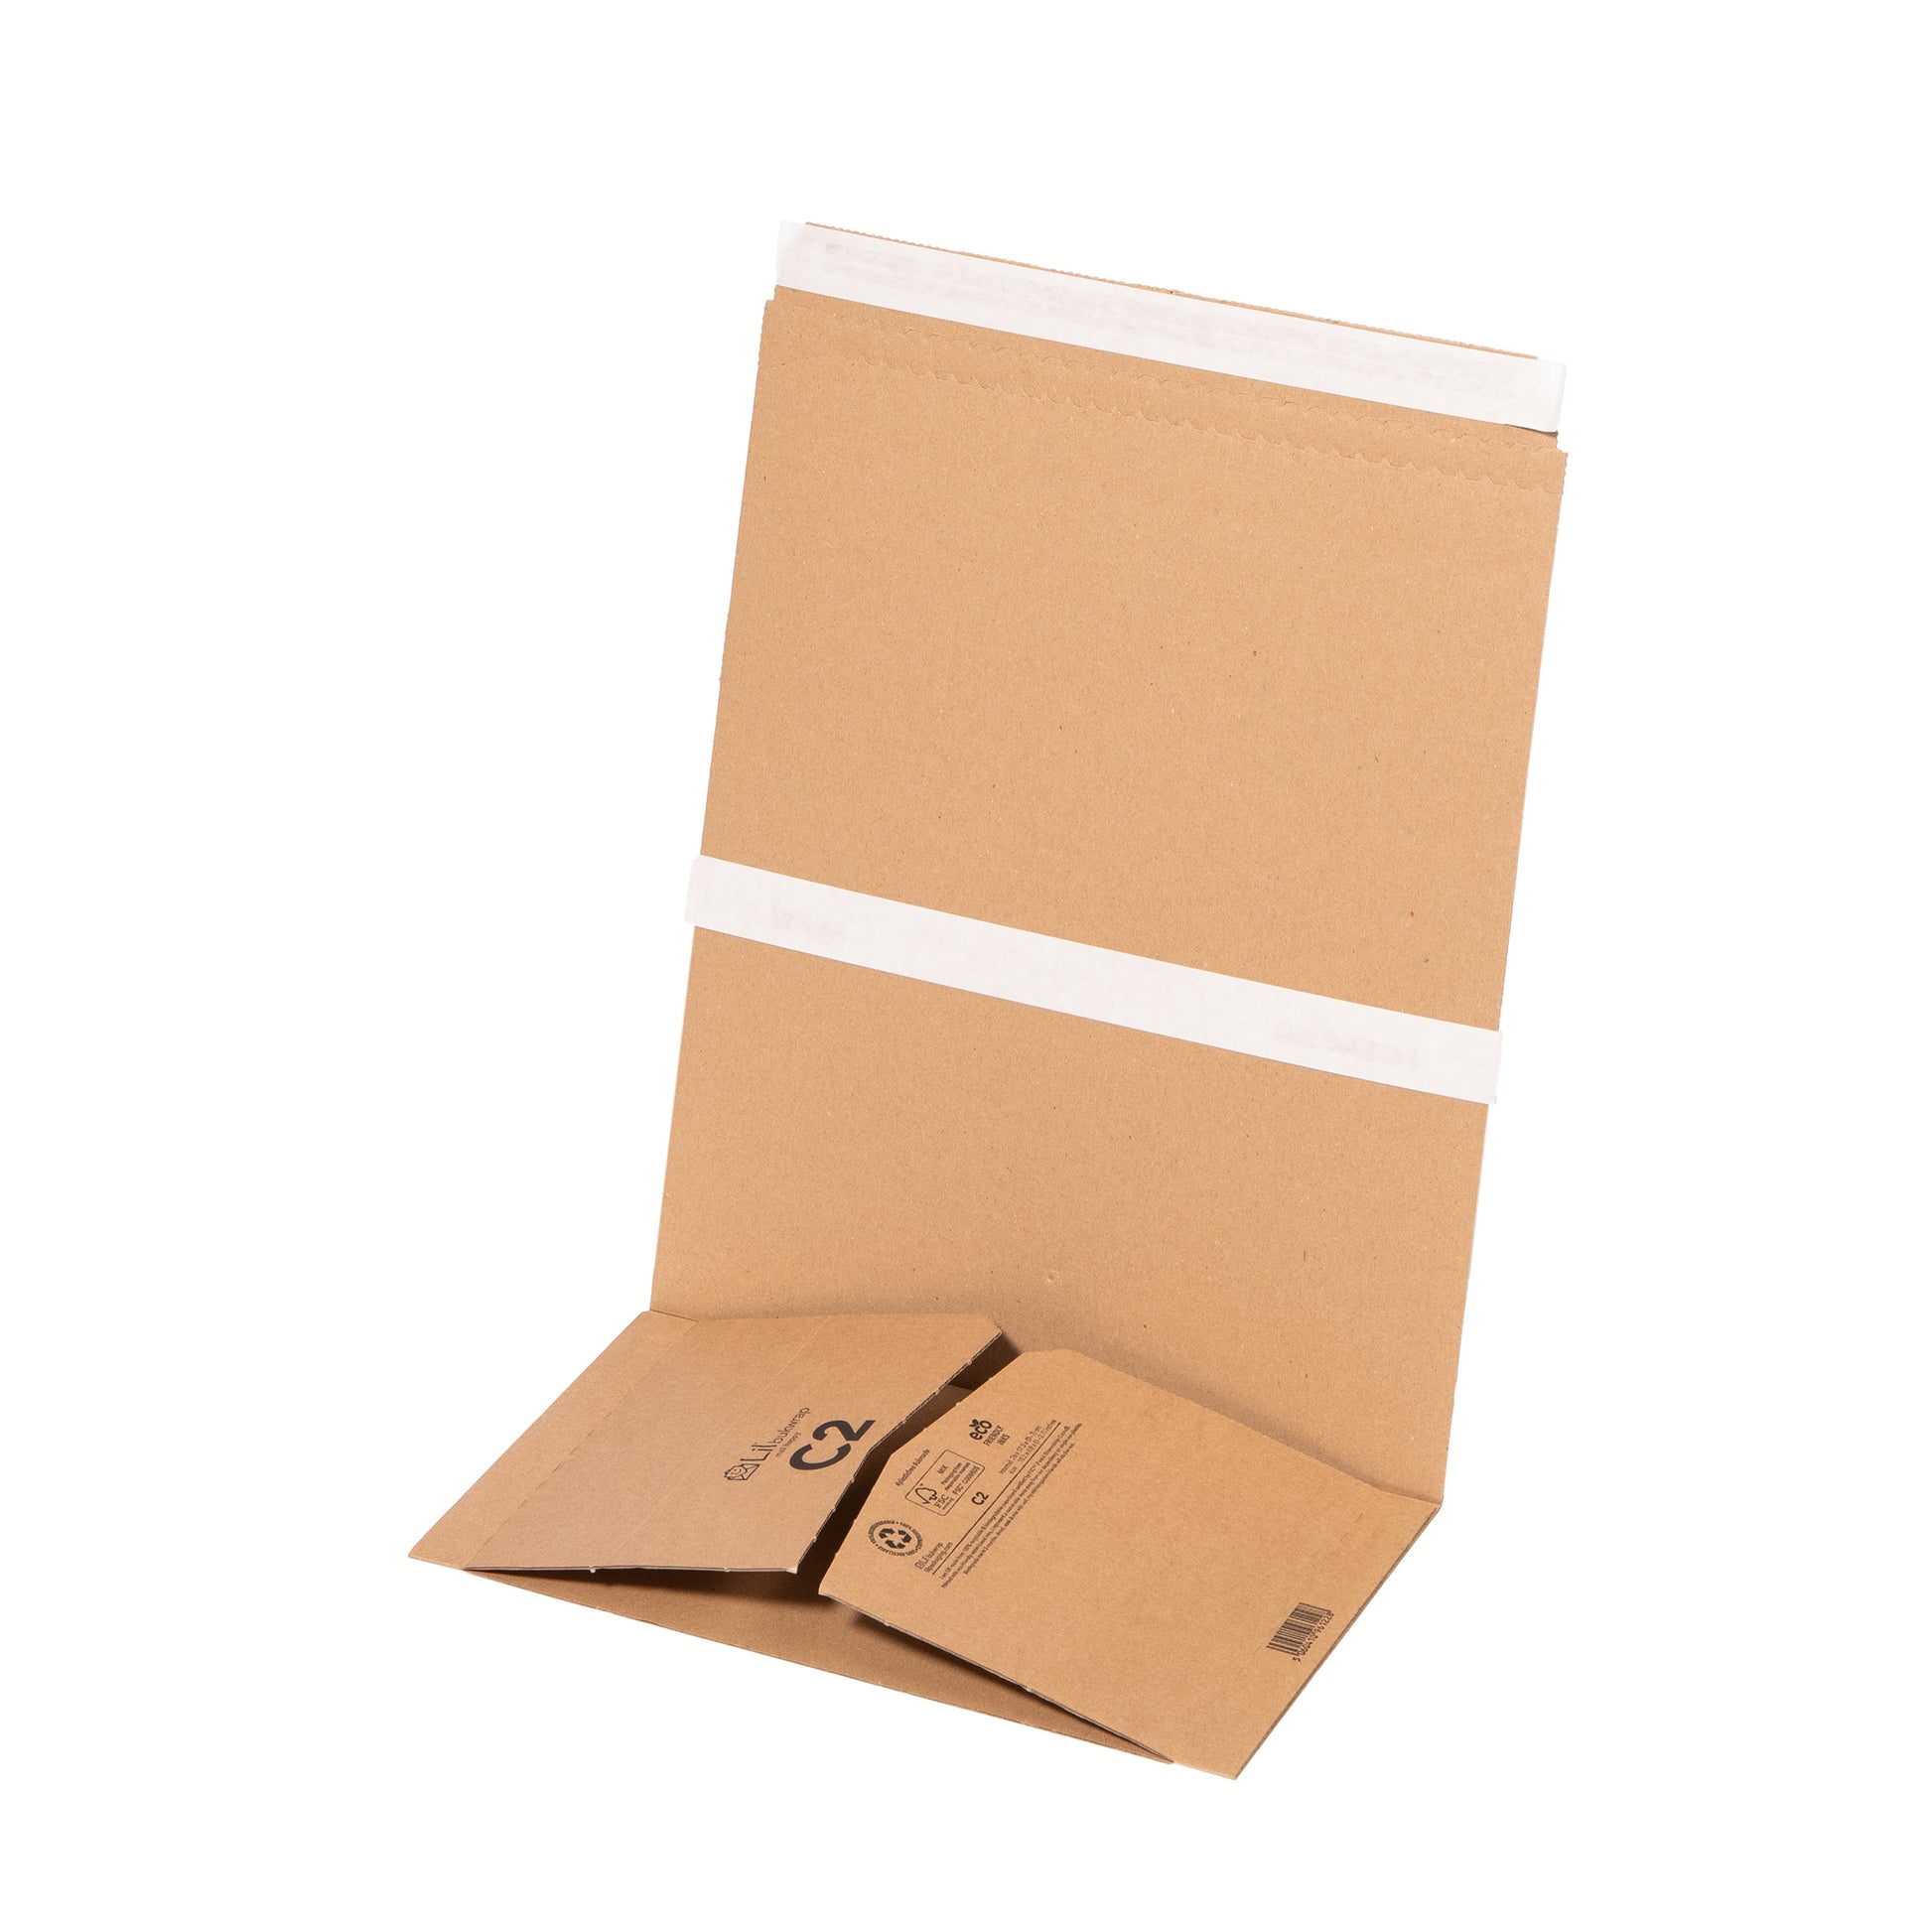 C2 Bookwrap Book Packaging | Lil Packaging